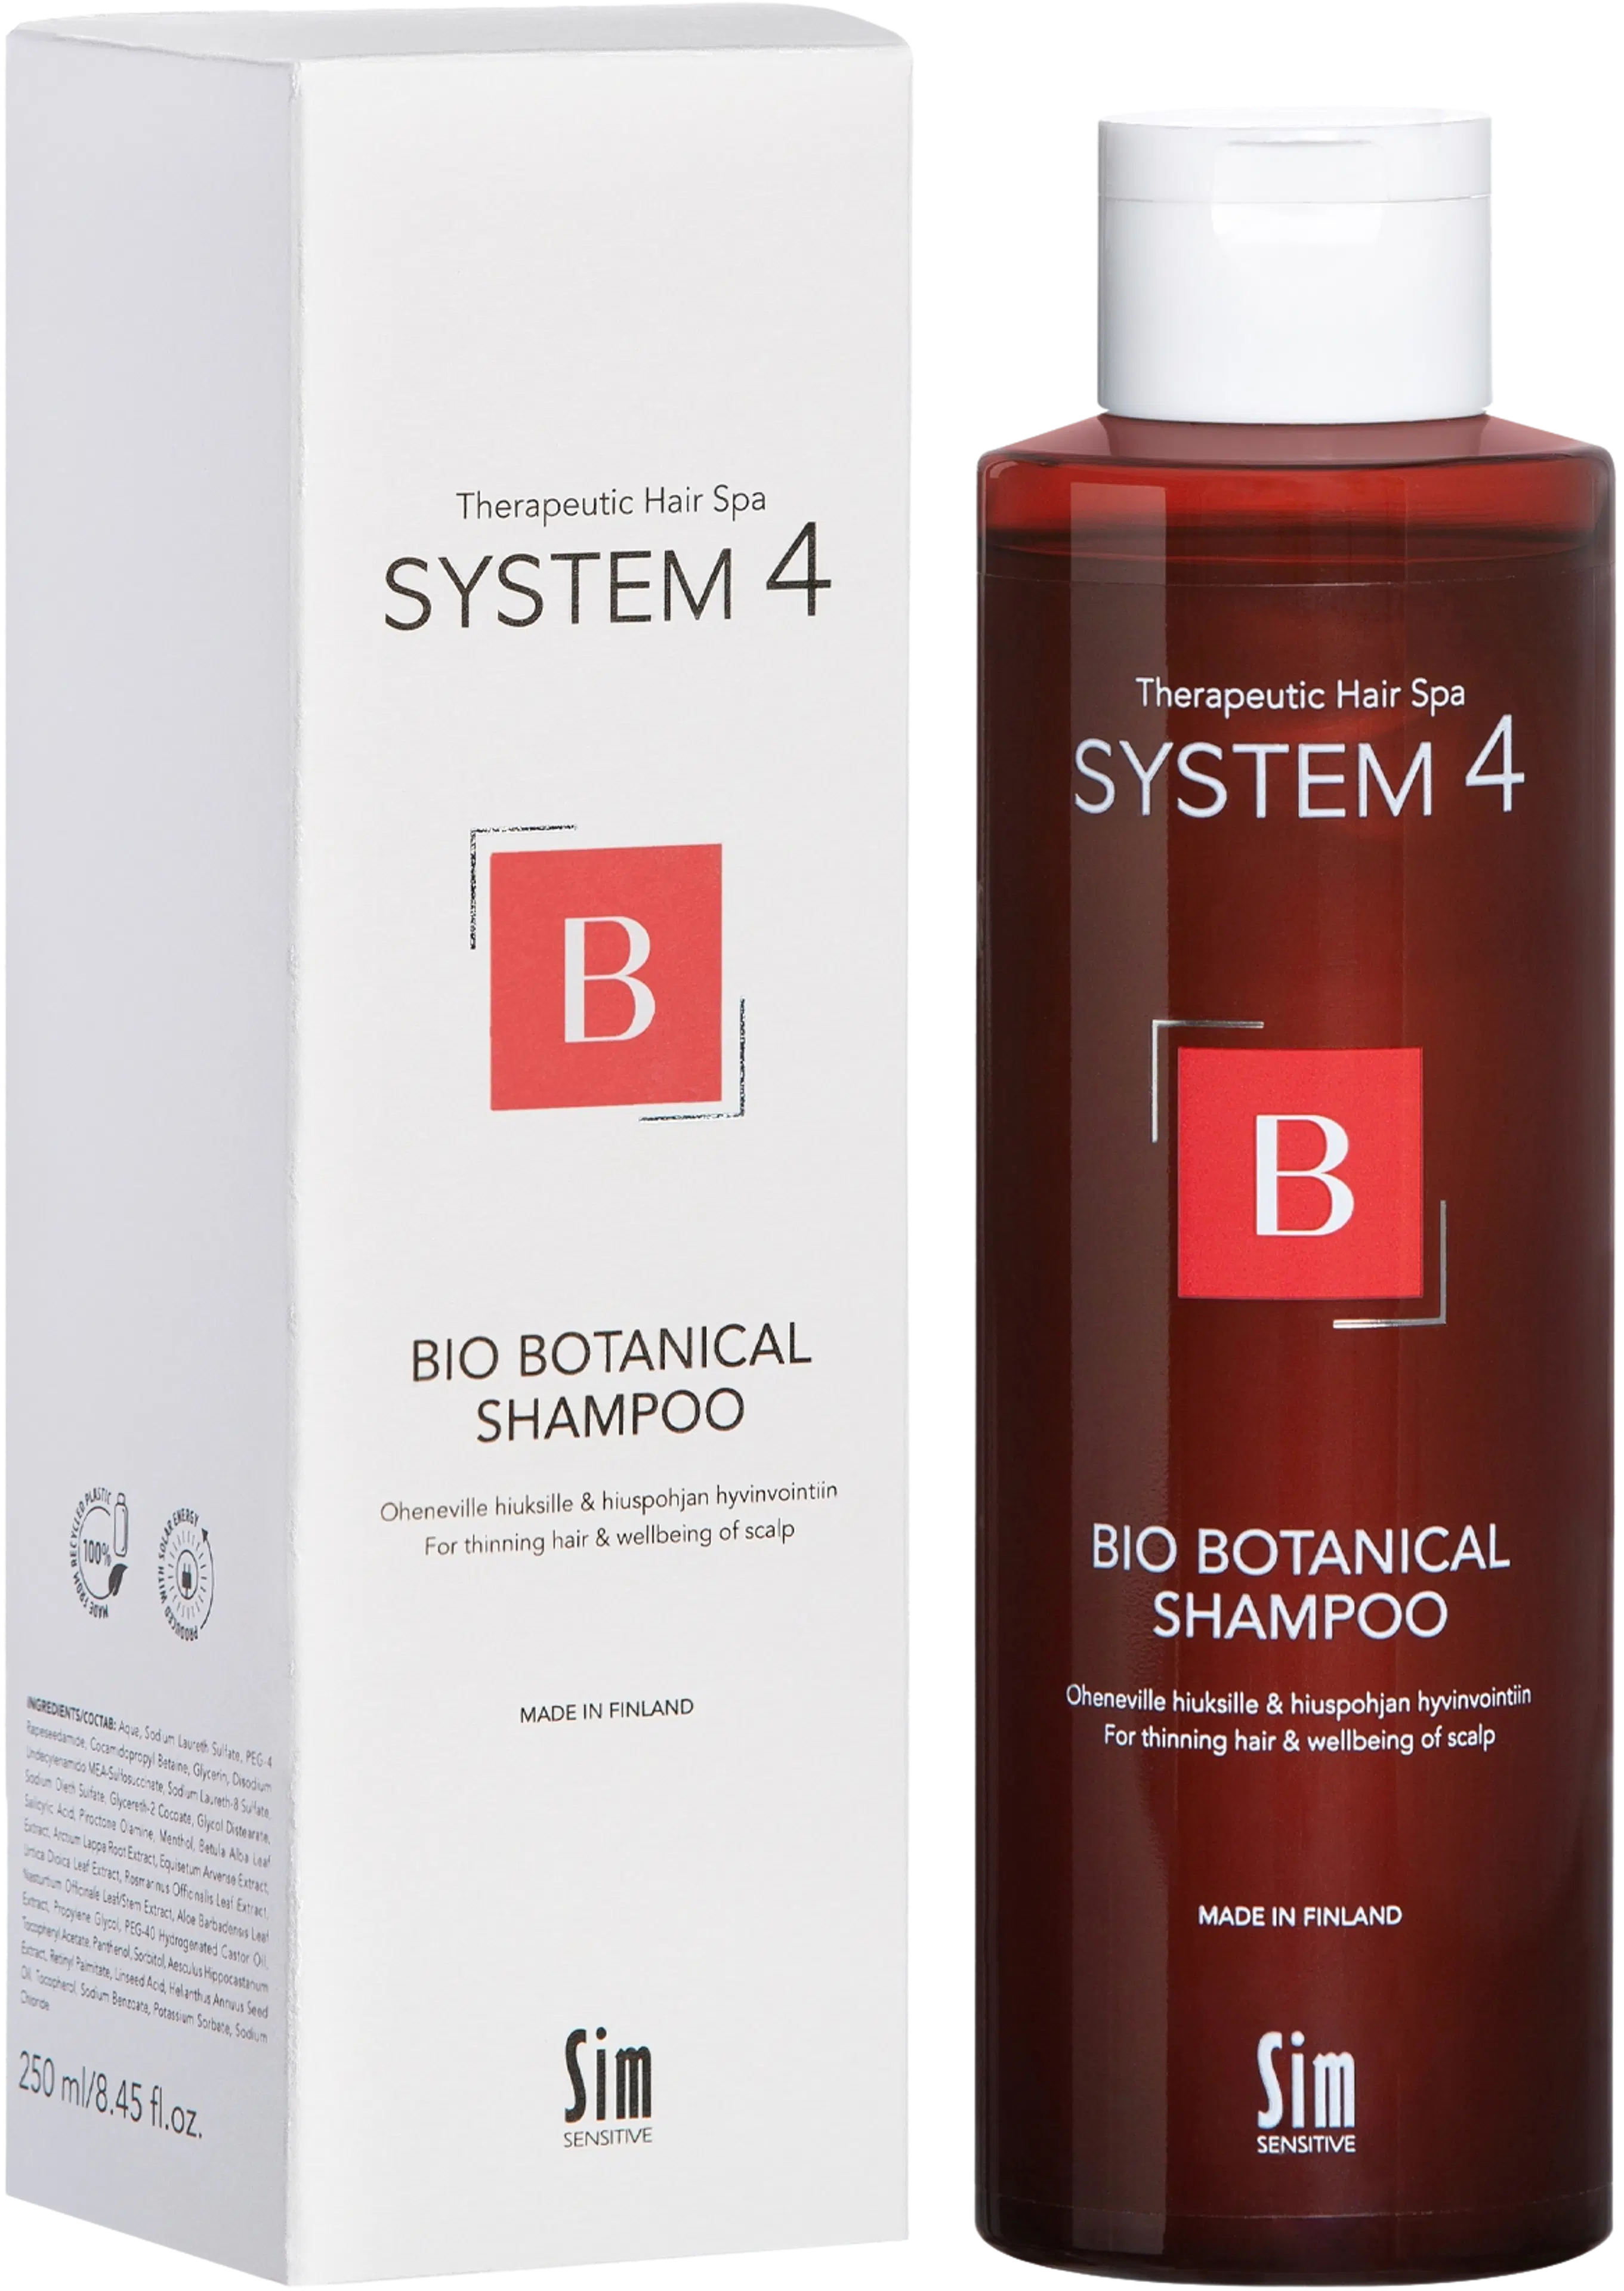 Sim Sensitive System4, Bio Botanical Shampoo 250 ml